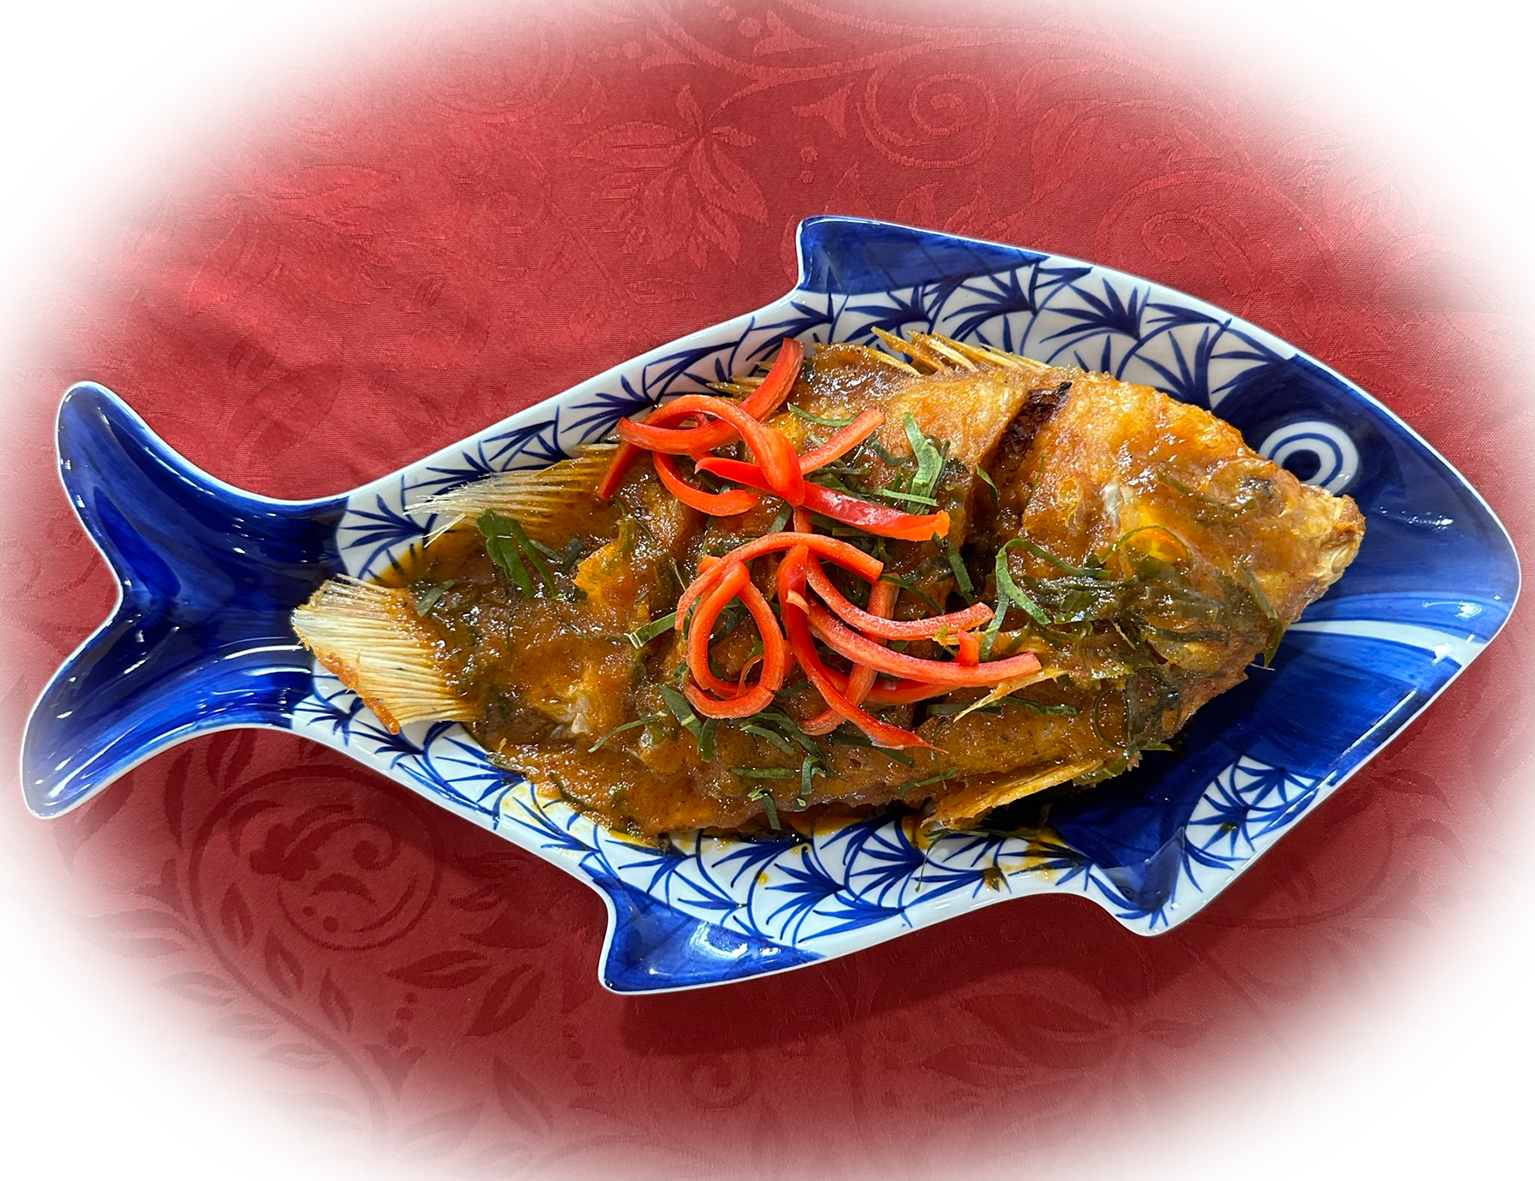 Chu Chee Fish Curry ist ein thailändisches Fischgericht, bei dem der Fisch in einer reichhaltigen, c